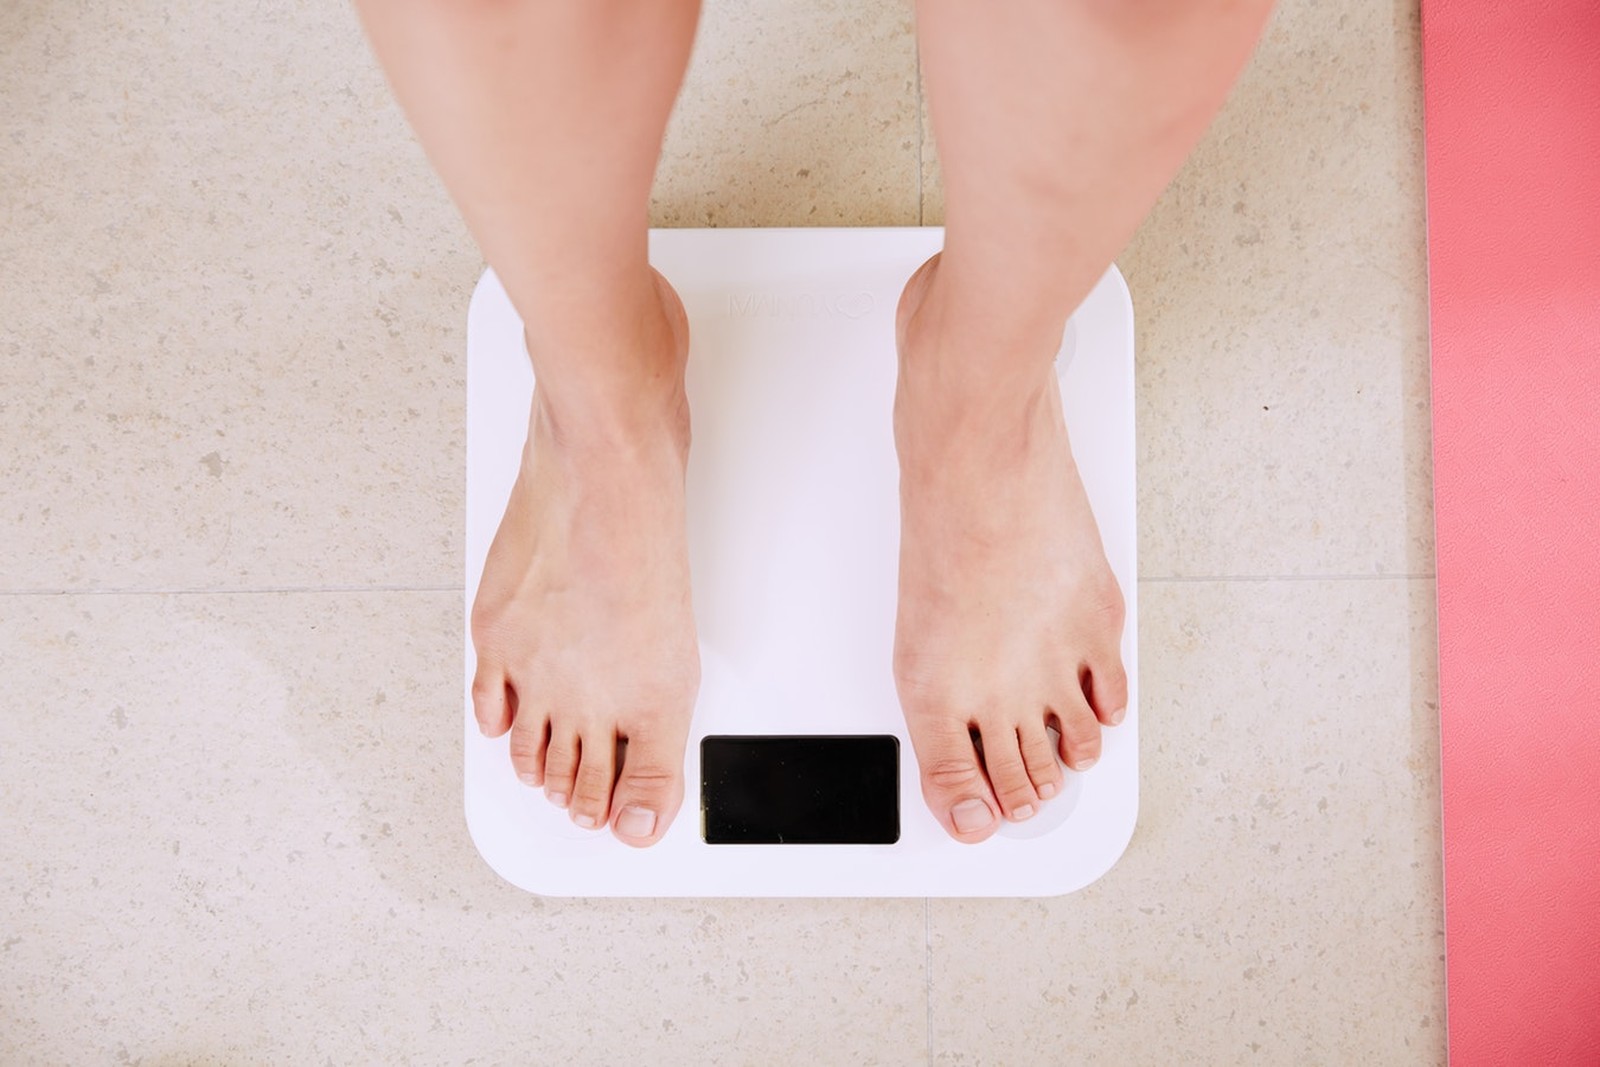 Ser muito gordo ou muito magro 'pode custar 4 anos de vida', aponta estudo